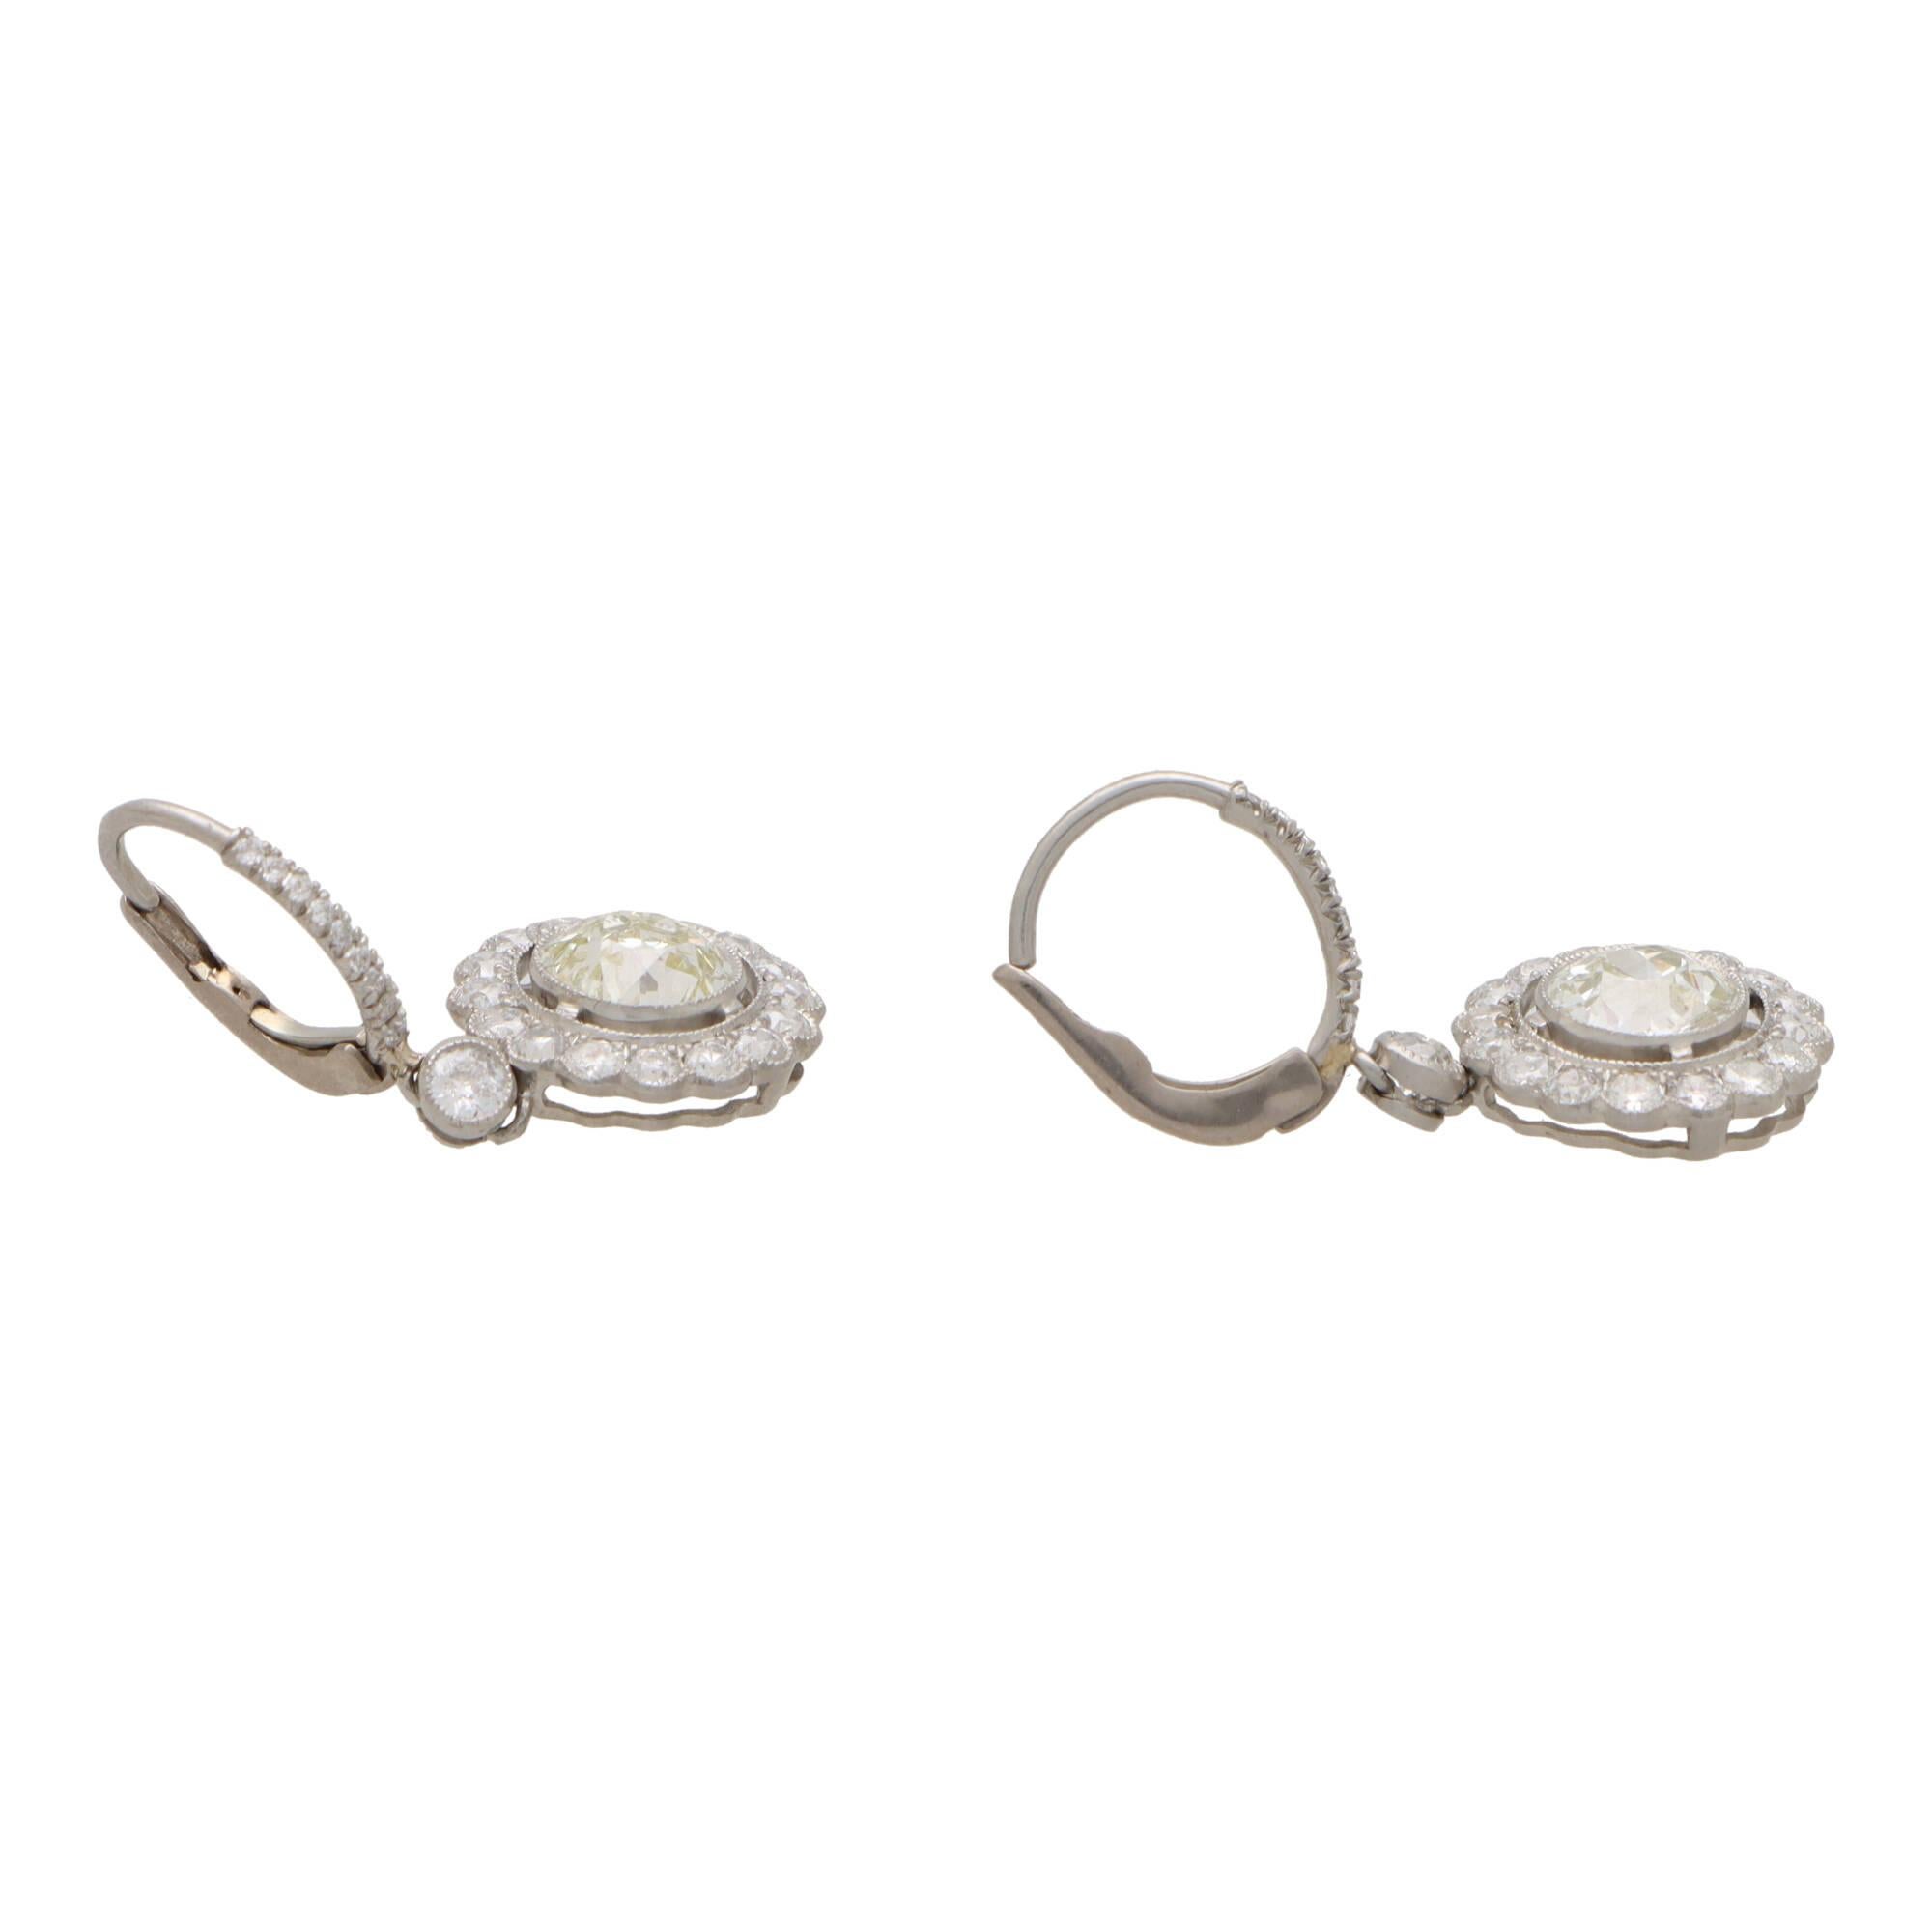 Une belle paire de boucles d'oreilles d'inspiration vintage en forme de grappe de diamants ronds, montées sur platine.

Chaque boucle d'oreille est composée d'un seul diamant de 1,25 carat.  Le diamant central de taille européenne est serti en rubis